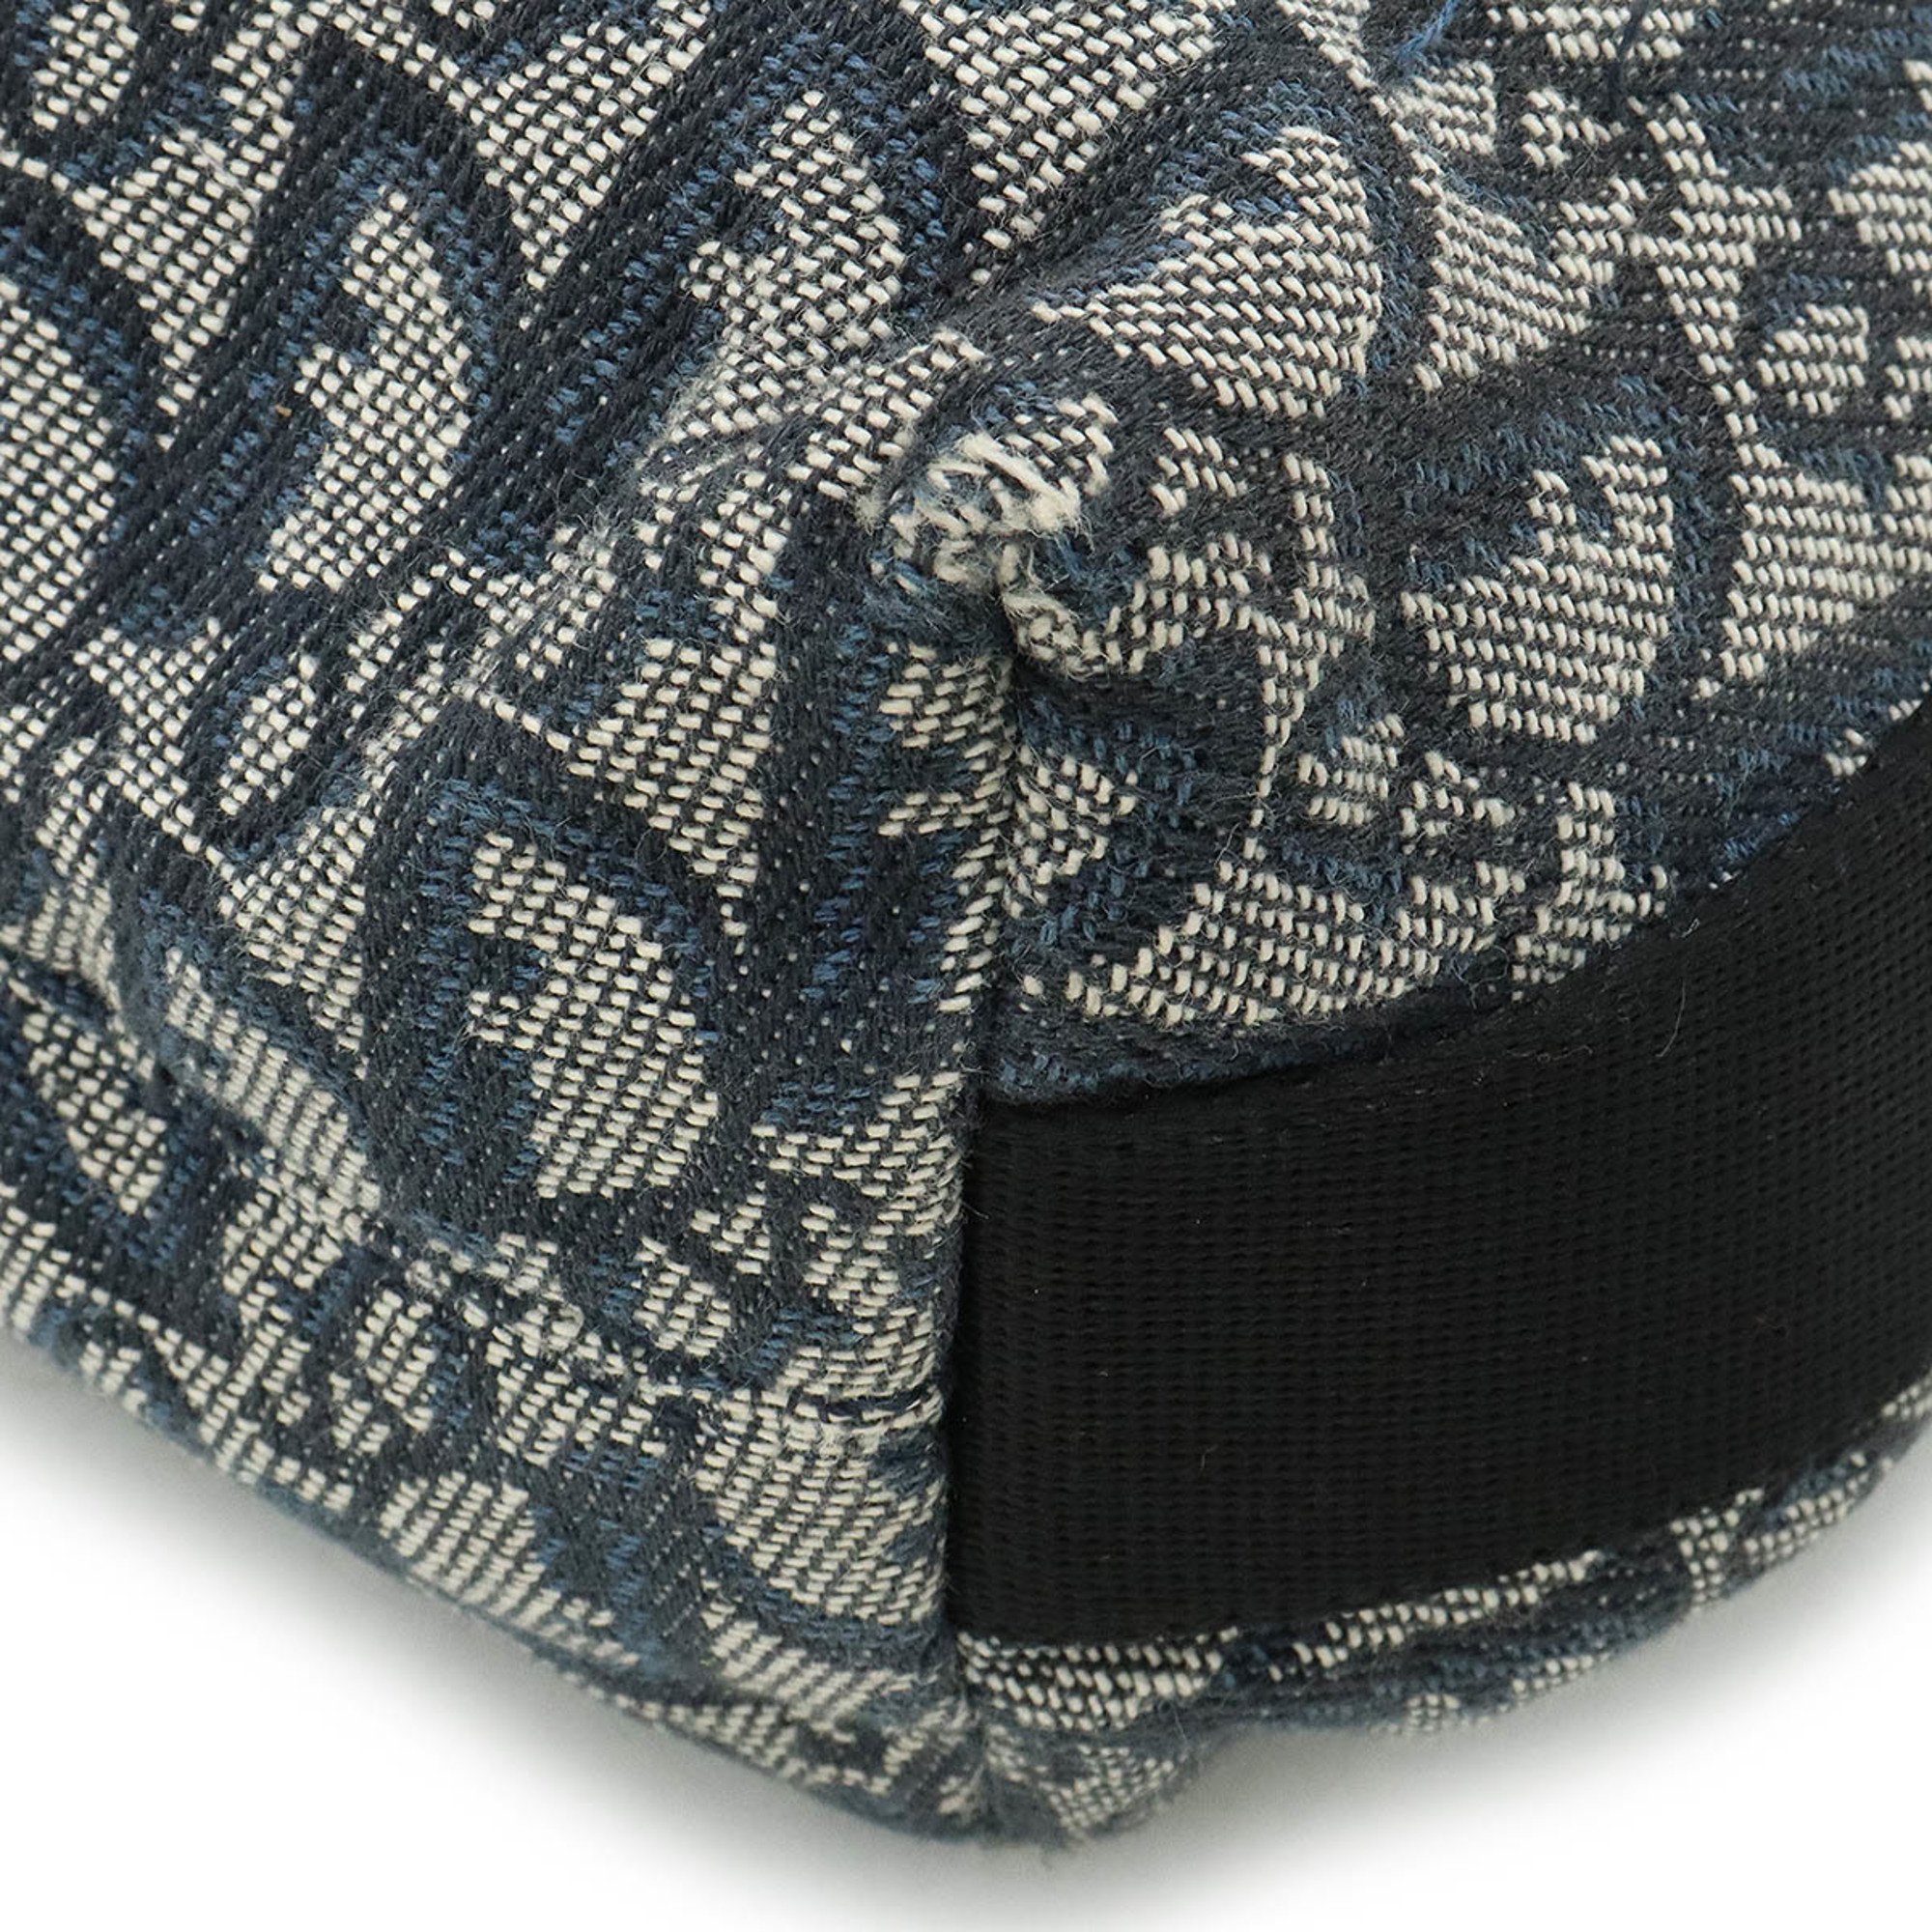 Christian Dior Trotter Shoulder Bag Jacquard Canvas Leather Navy